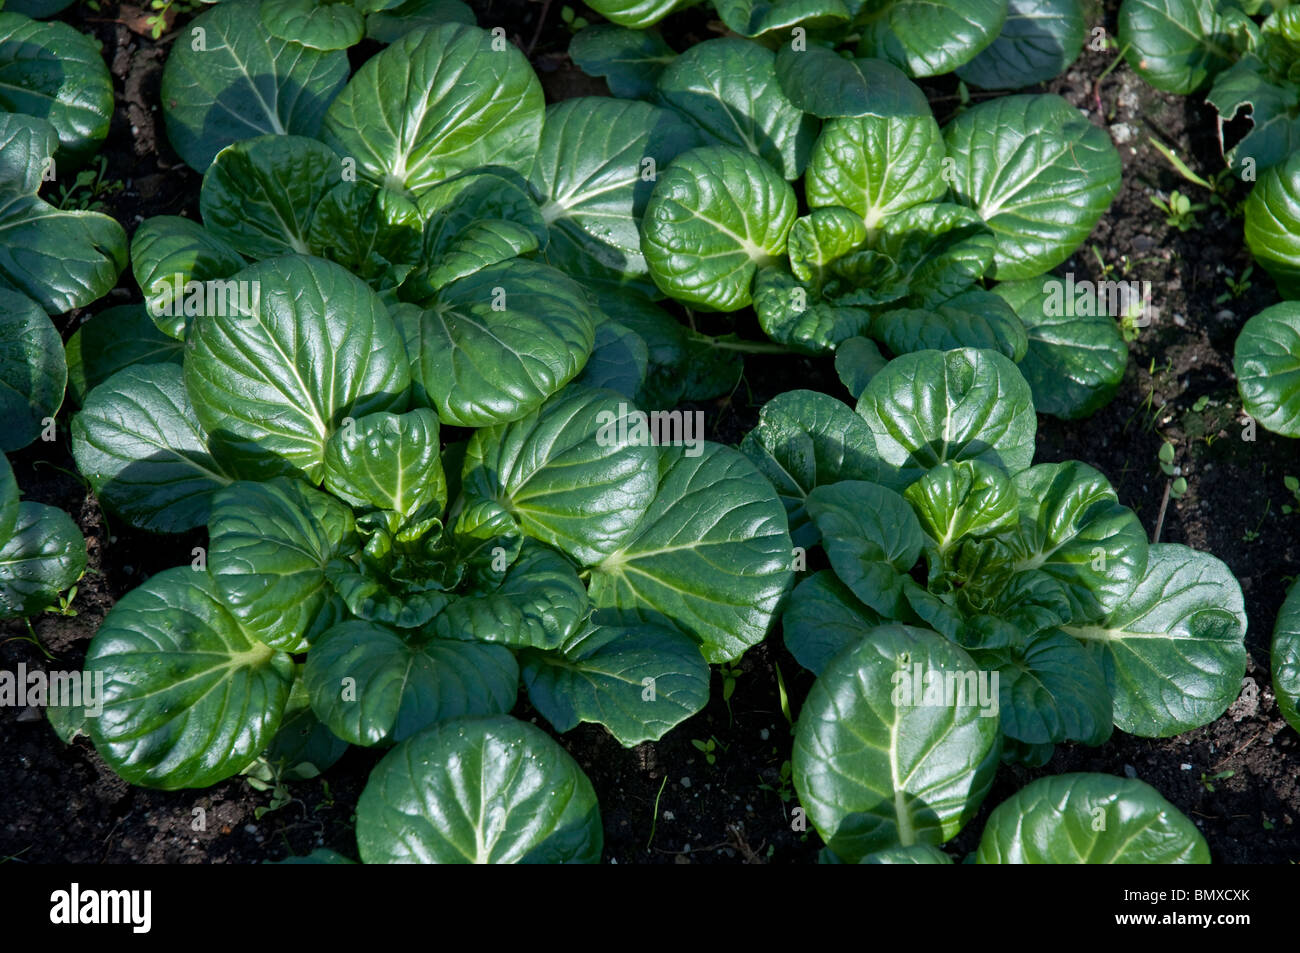 Tatsoi verdi asiatici chiamato anche spinaci senape, cucchiaio di senape o rosette cavolo cinese nome scientifico: Brassica rapa rosularis Foto Stock